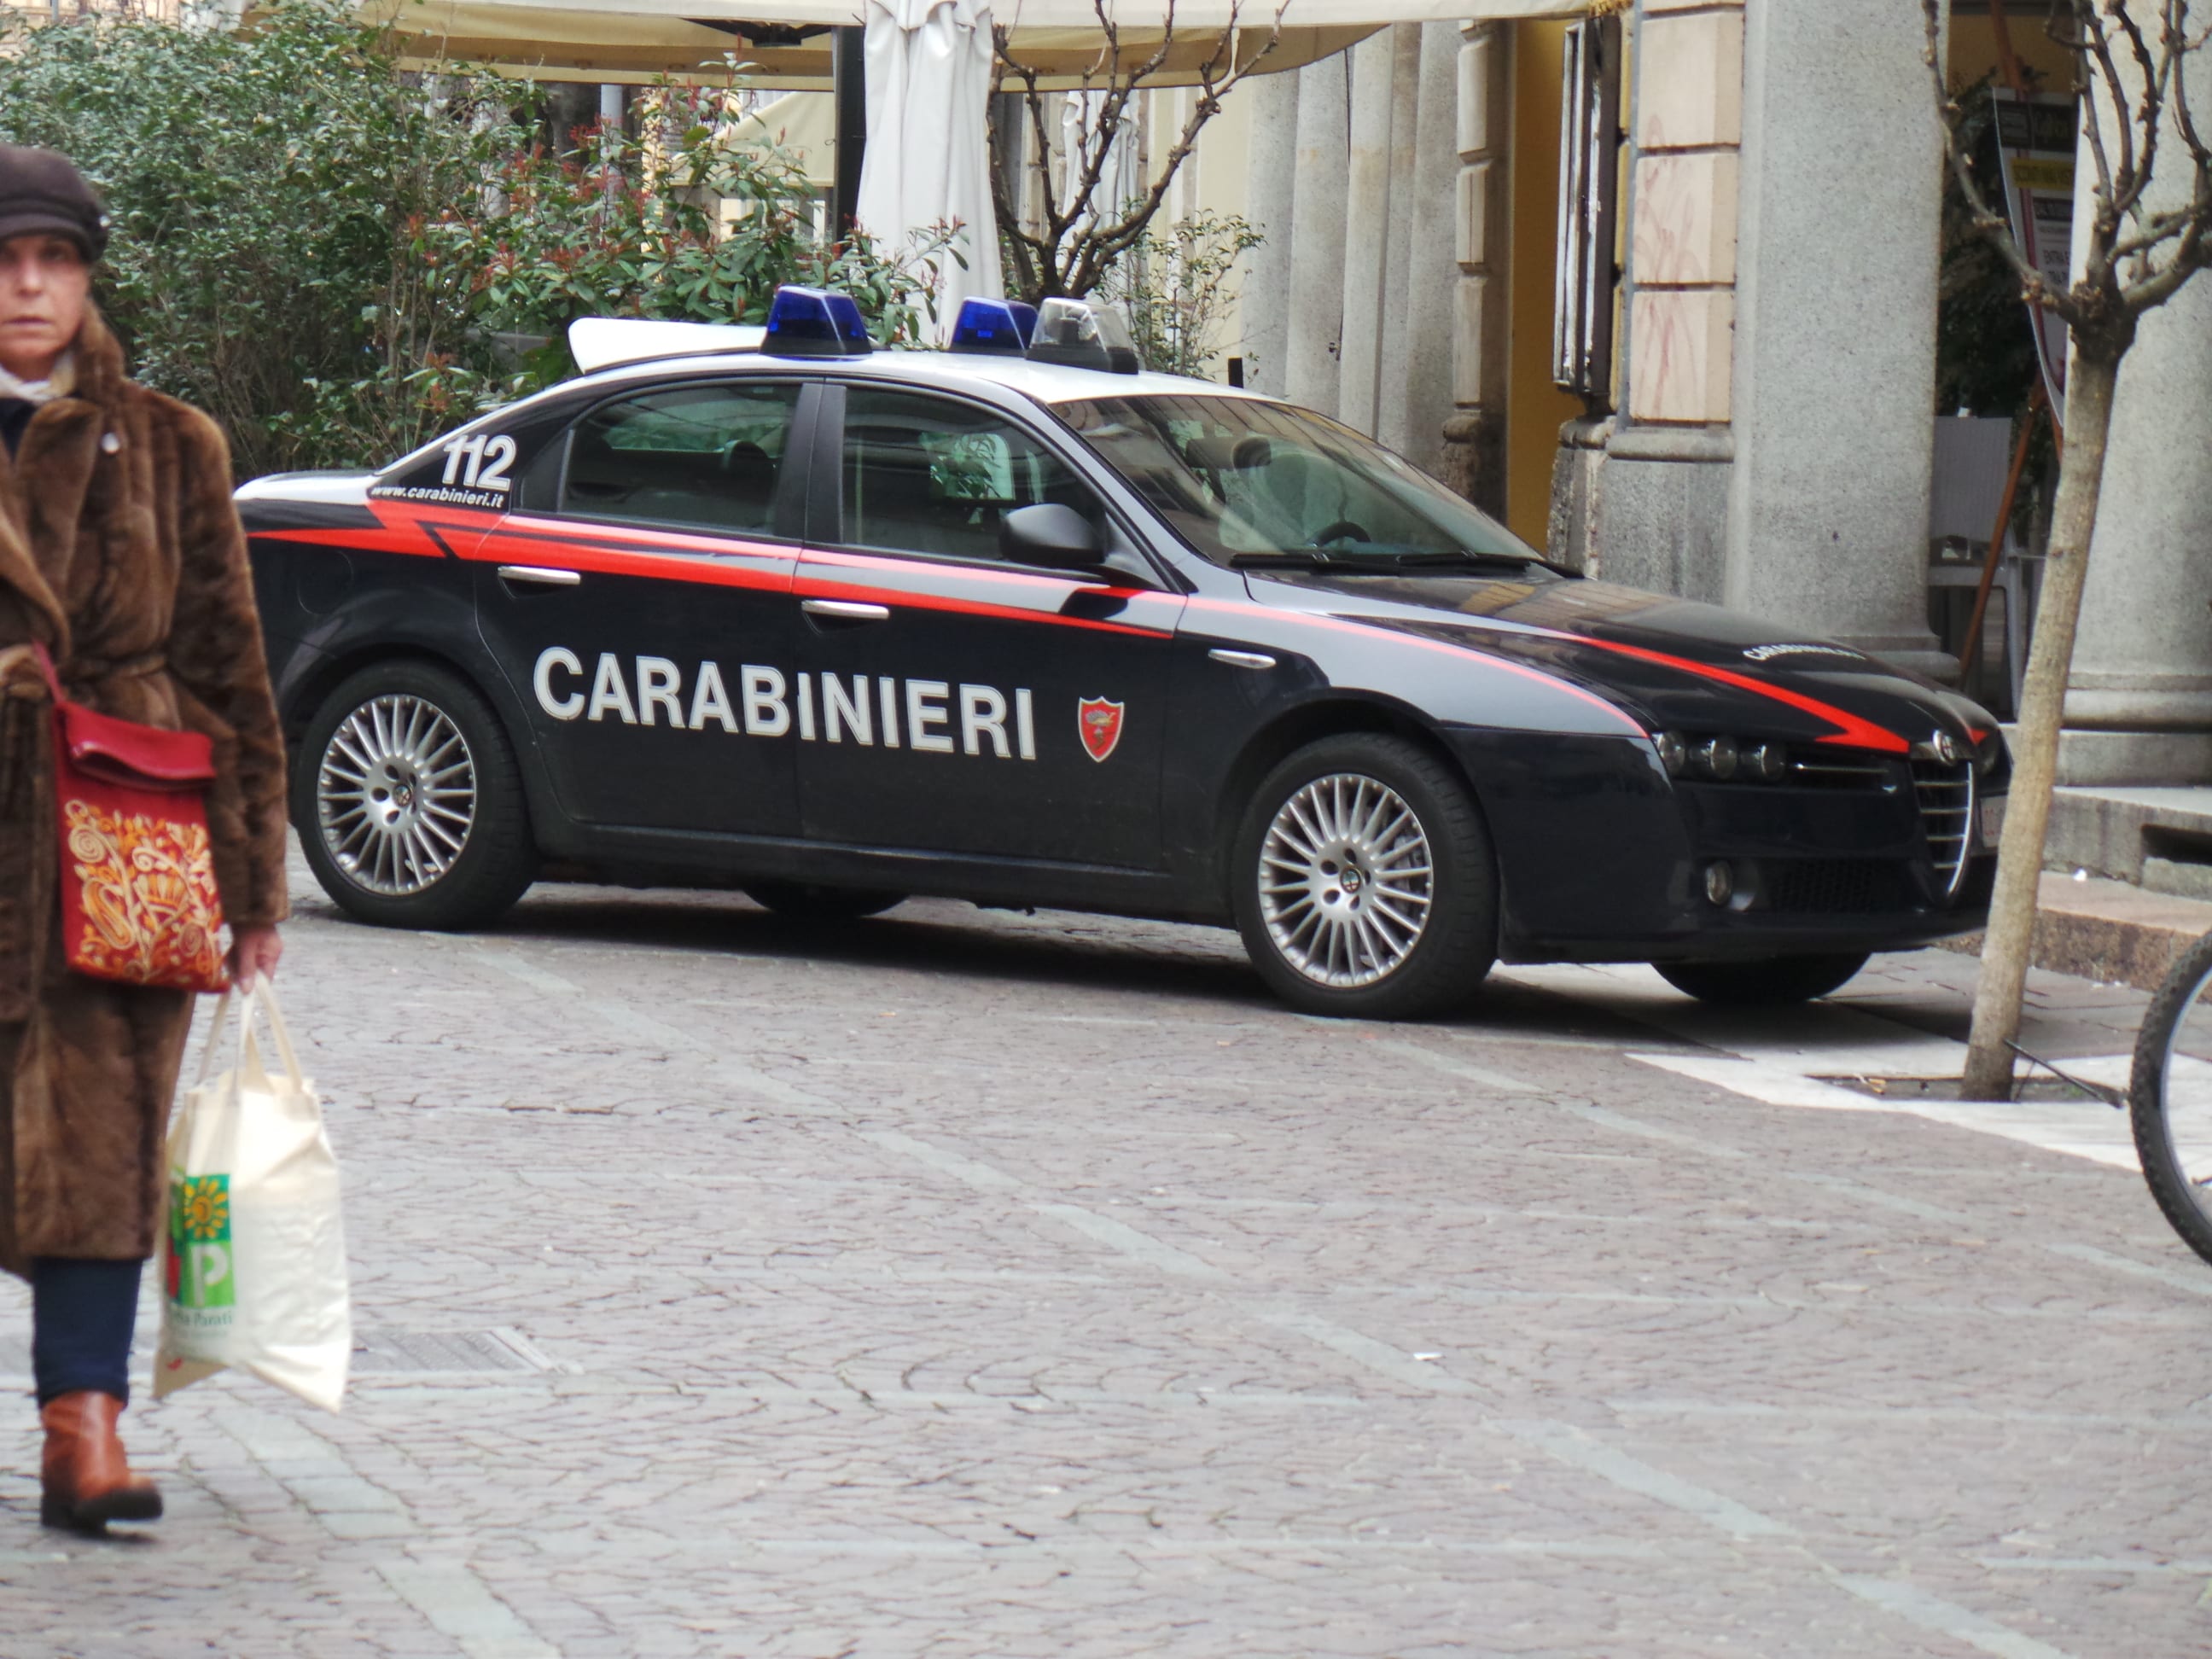 Evade nonostante i rimproveri di mamma: beccato dai carabinieri al bar